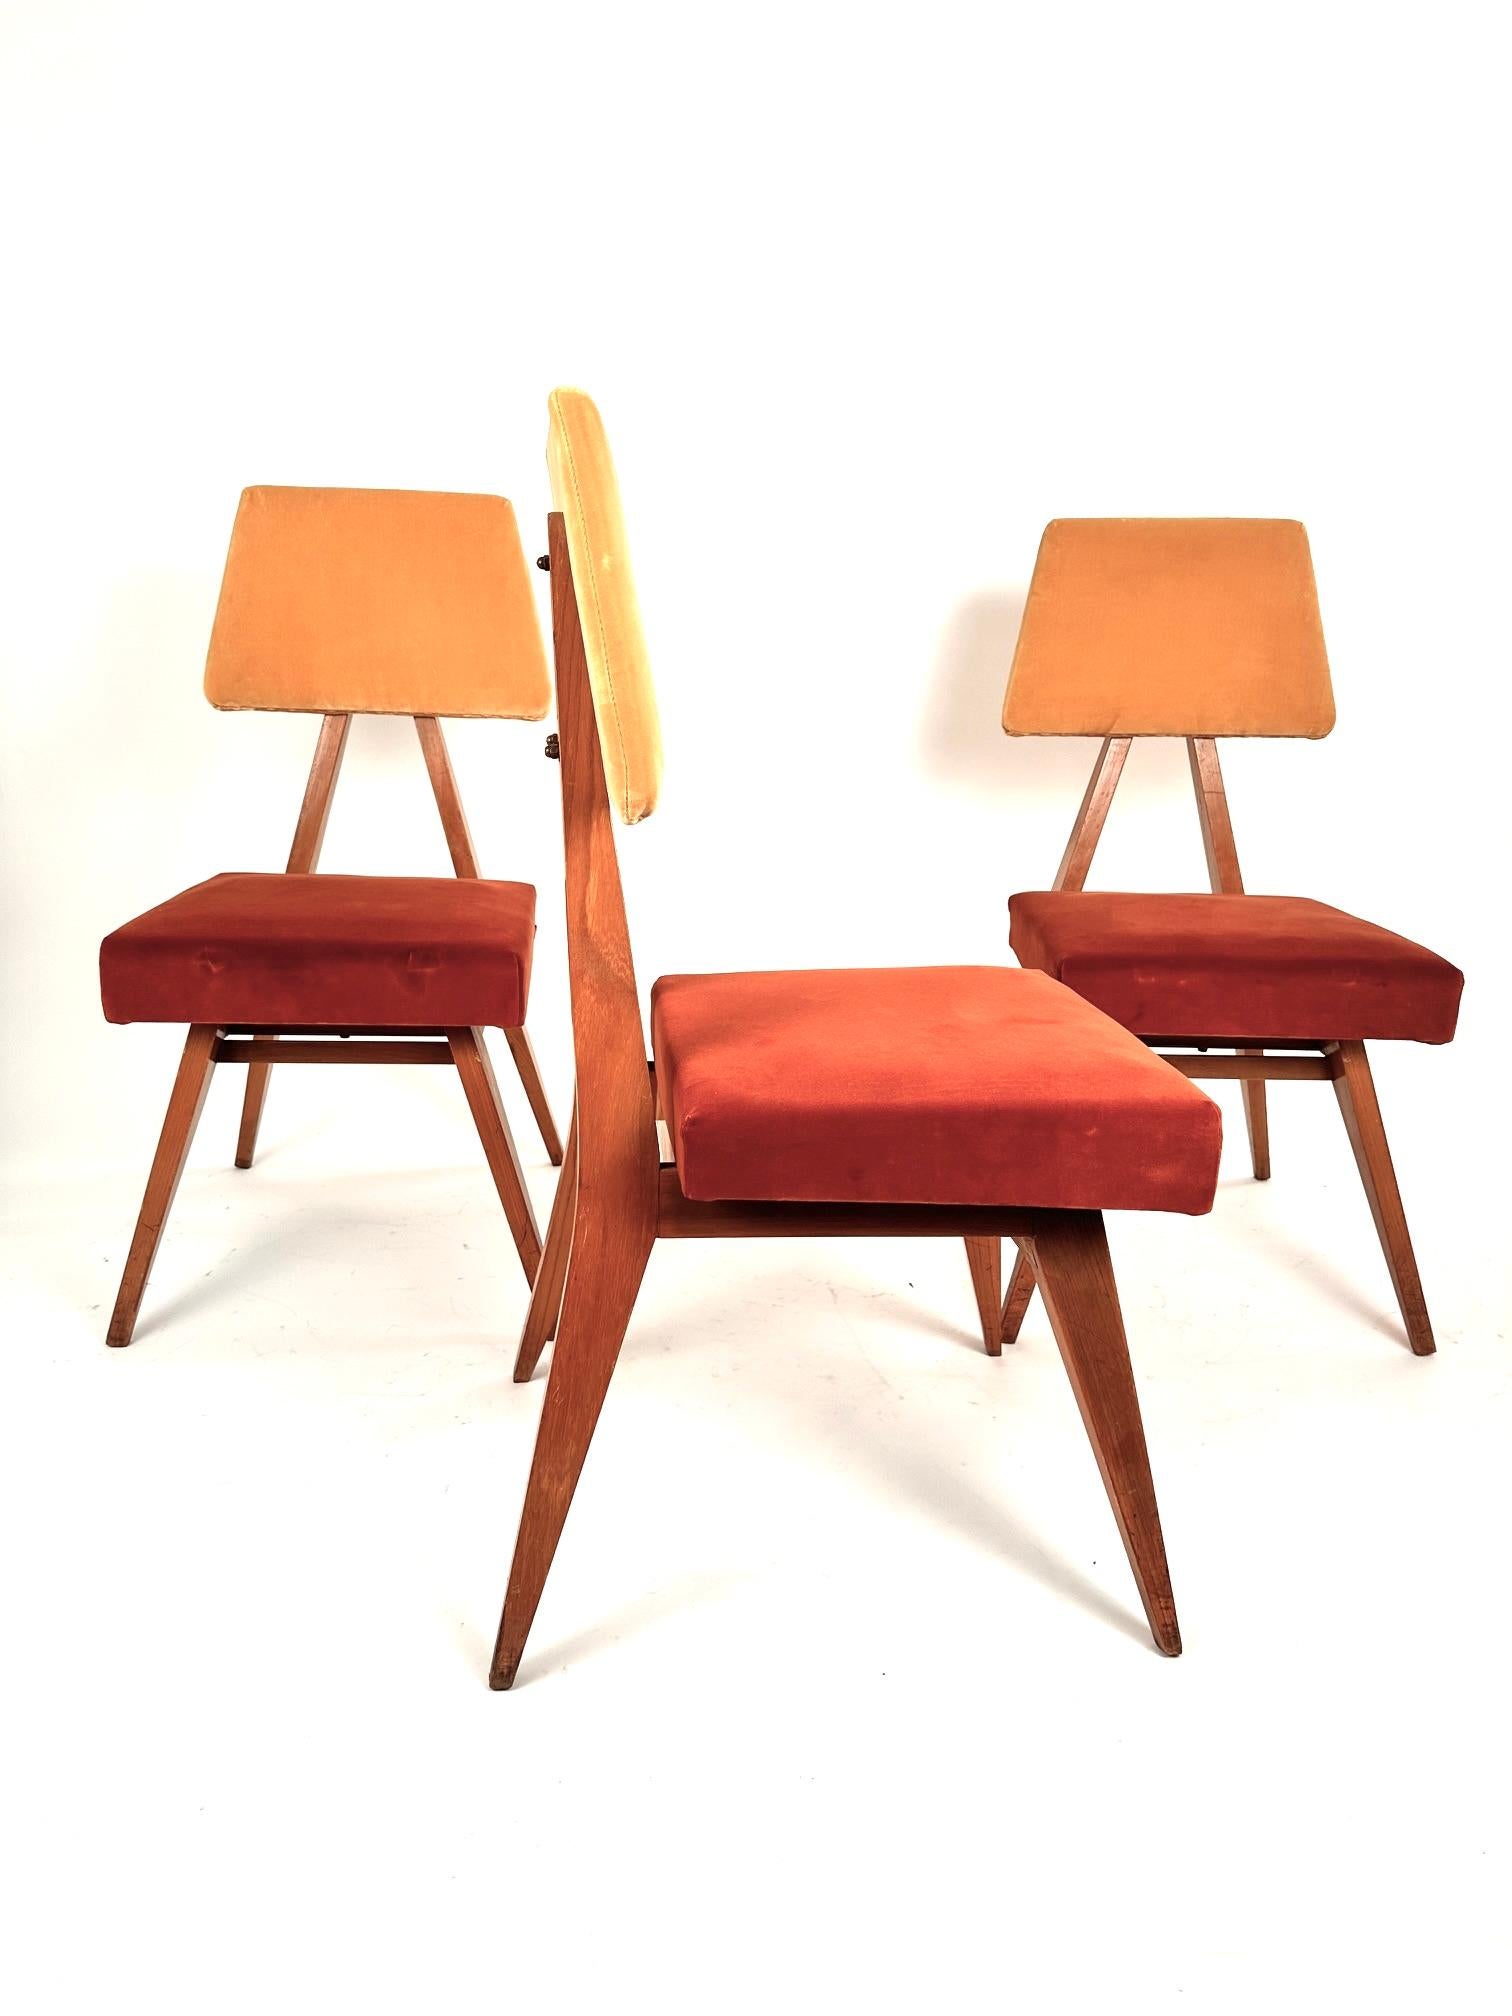 Ein seltenes Set von Mid-Century Modern Italian dining  Stühle, die in den 60er Jahren von der Turiner Schule entworfen wurden. Die Holzstruktur besteht aus einem dreieckigen Rahmen, auf dem eine trapezförmige Rückenlehne liegt. Feine italienische